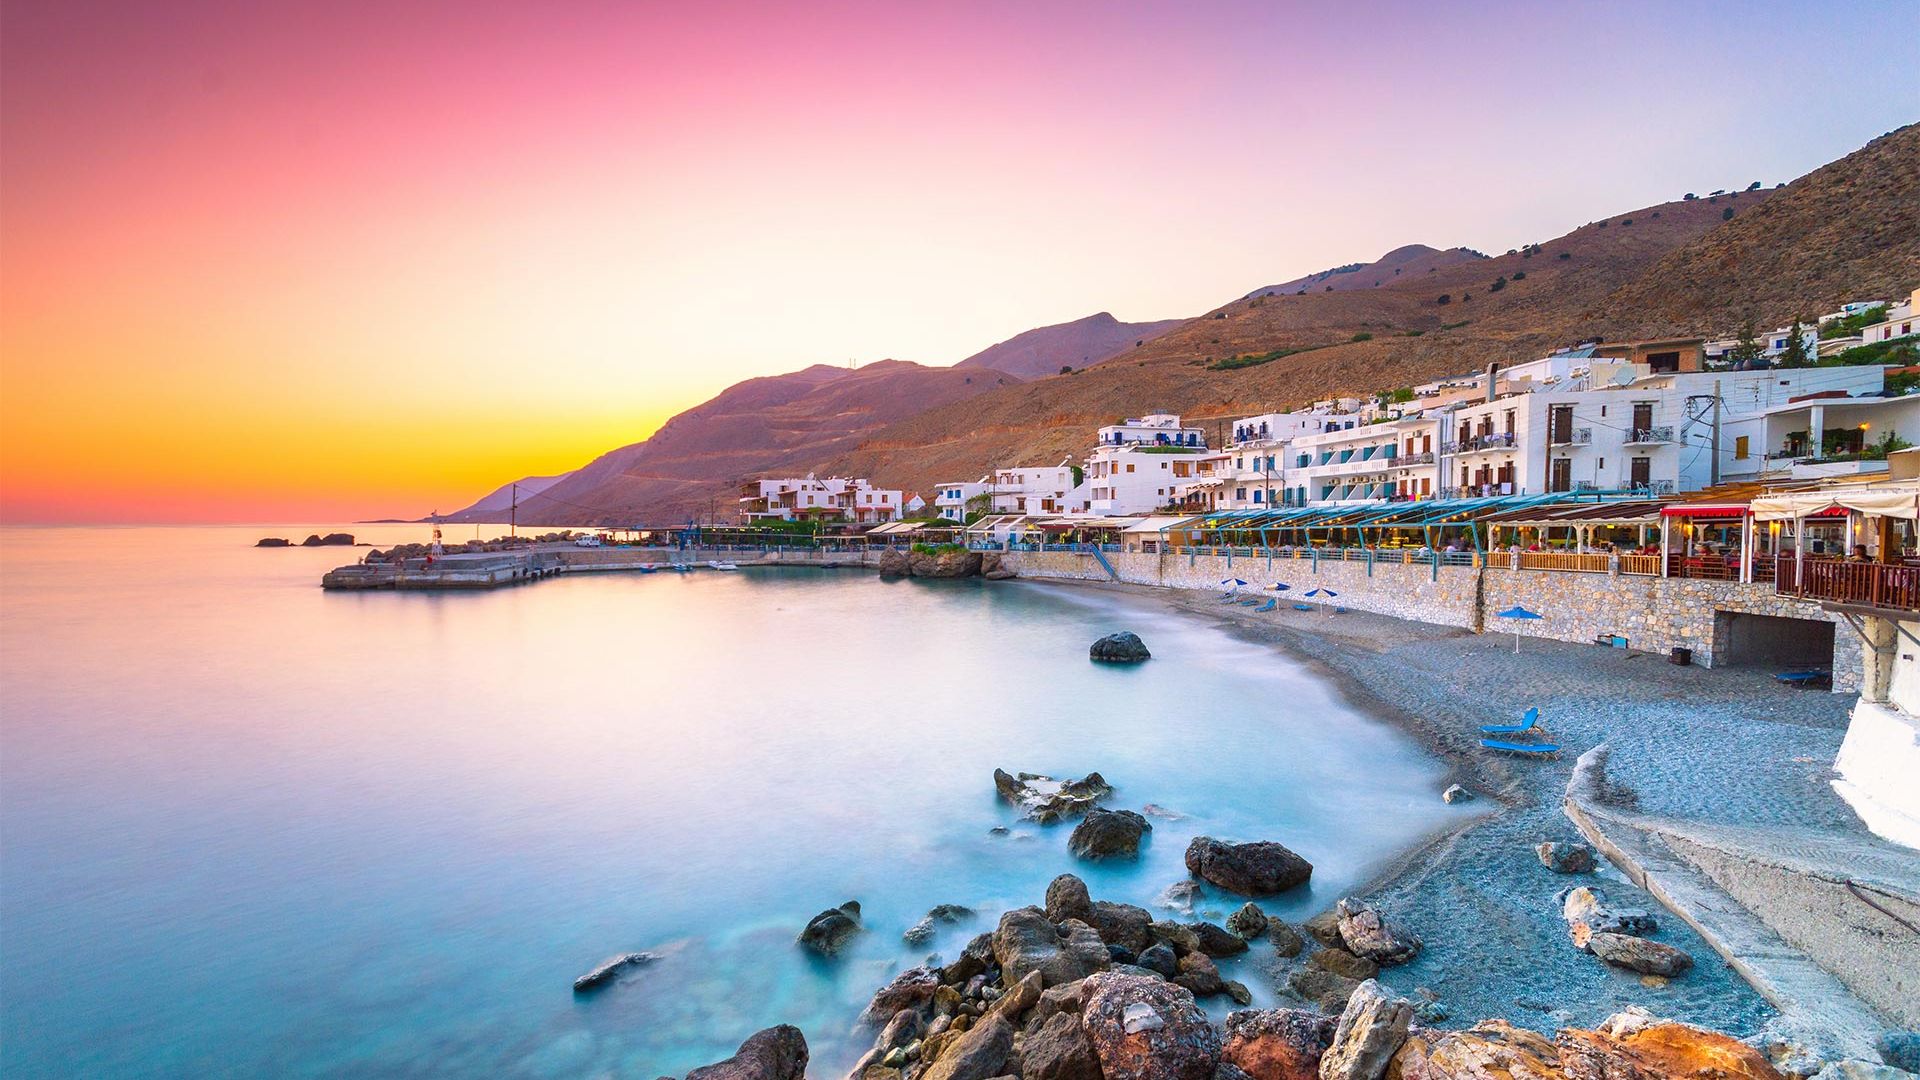 Sejur charter Creta - Heraklion, Grecia, 8 zile - 23 august 2022 - ultimele 2 locuri